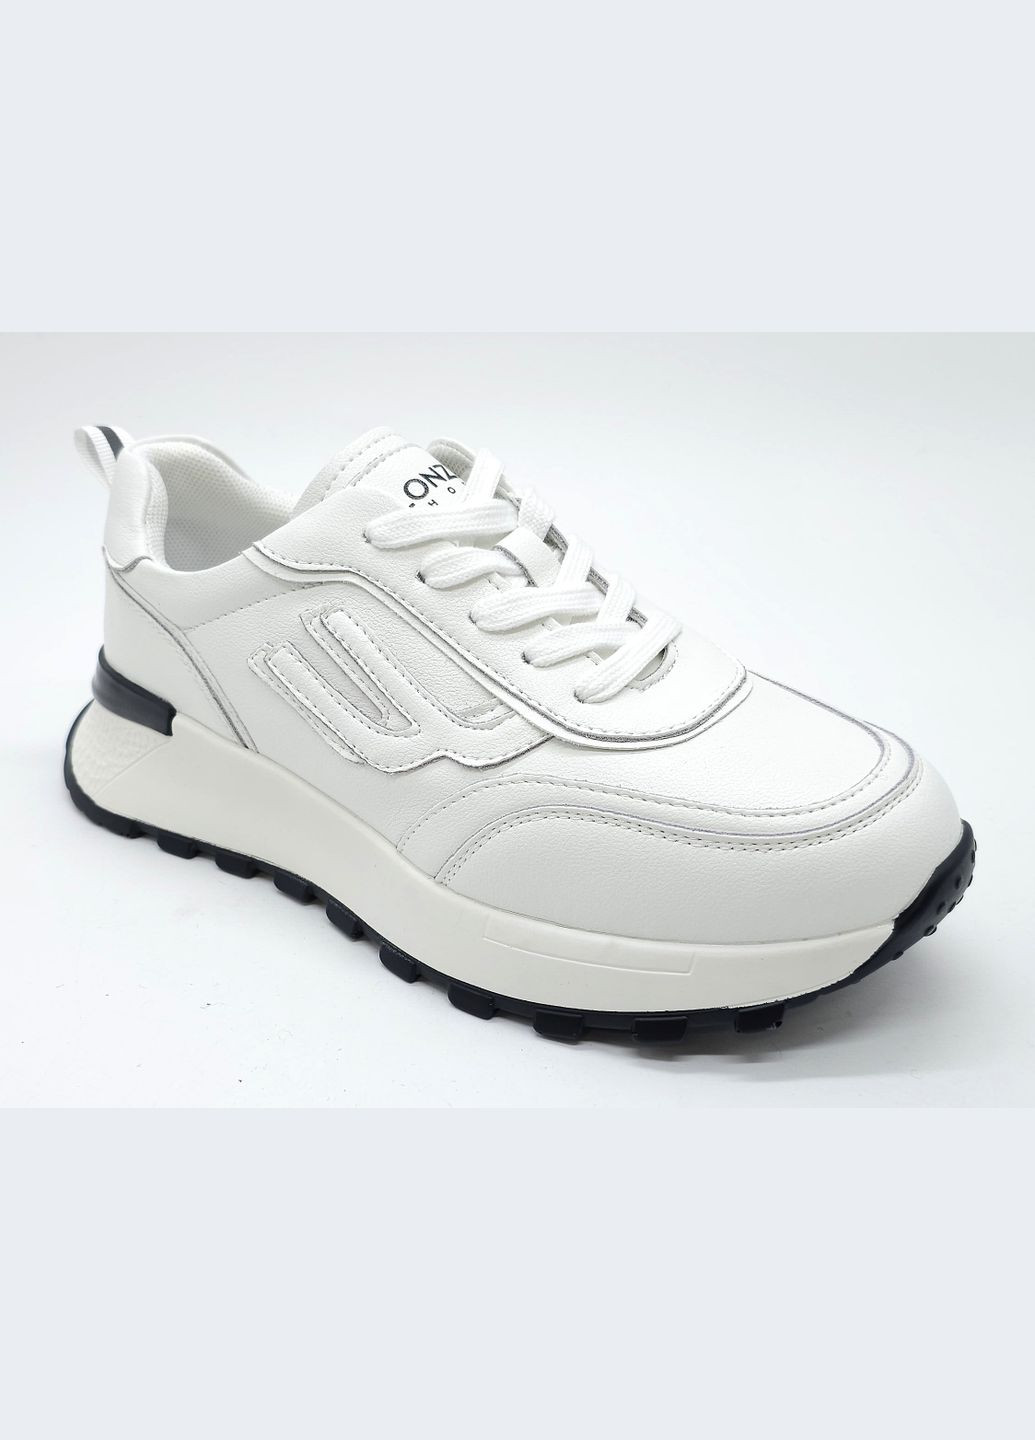 Белые всесезонные женские кроссовки белые кожаные l-19-13 23 см (р) Lonza